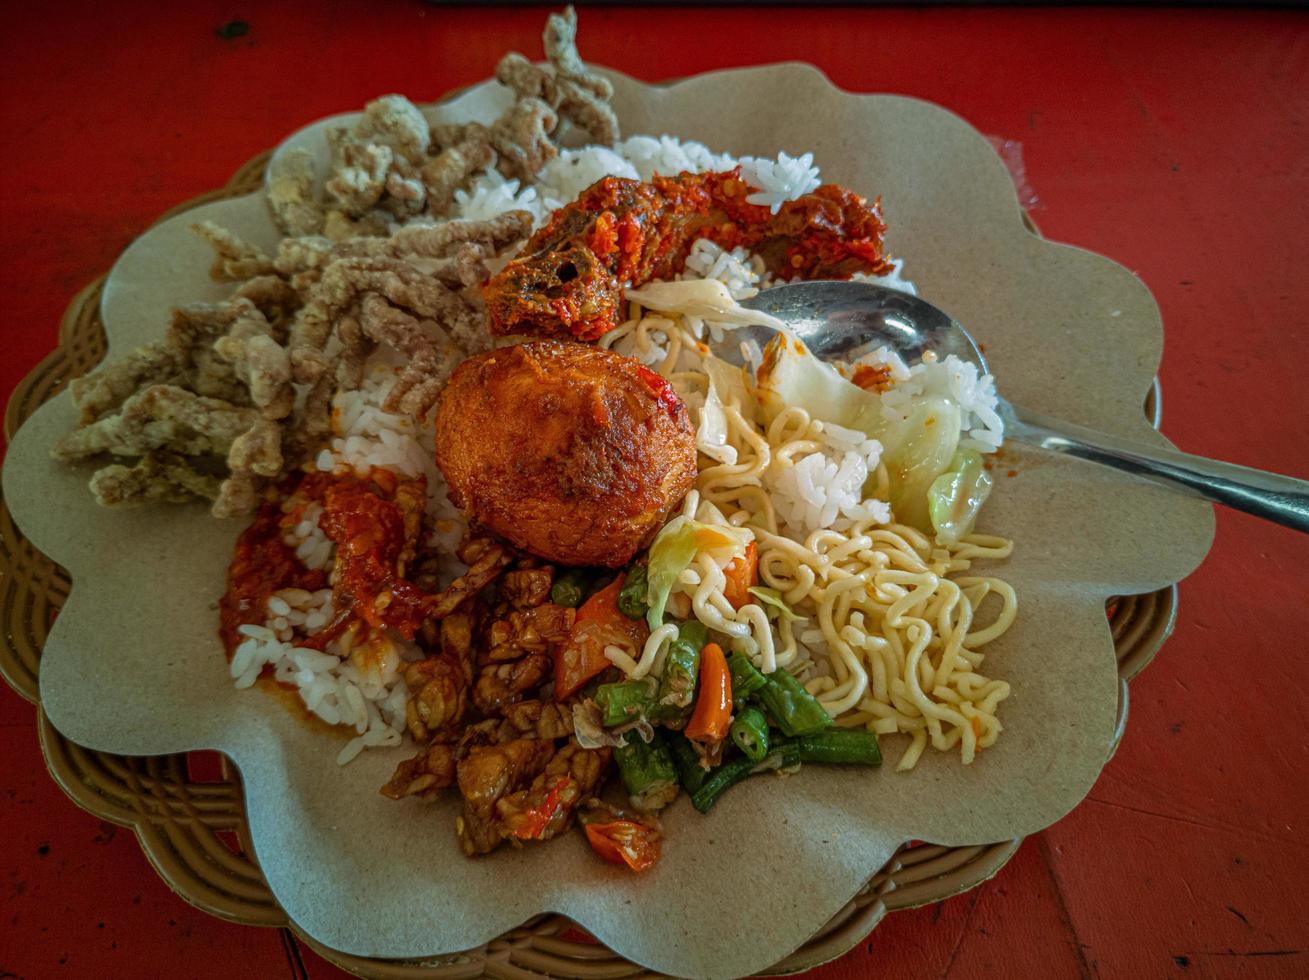 blandad ris. en populär indonesiska specialitet ris måltid med olika sida maträtter eras med ris och andra som frivillig tillägg. foto